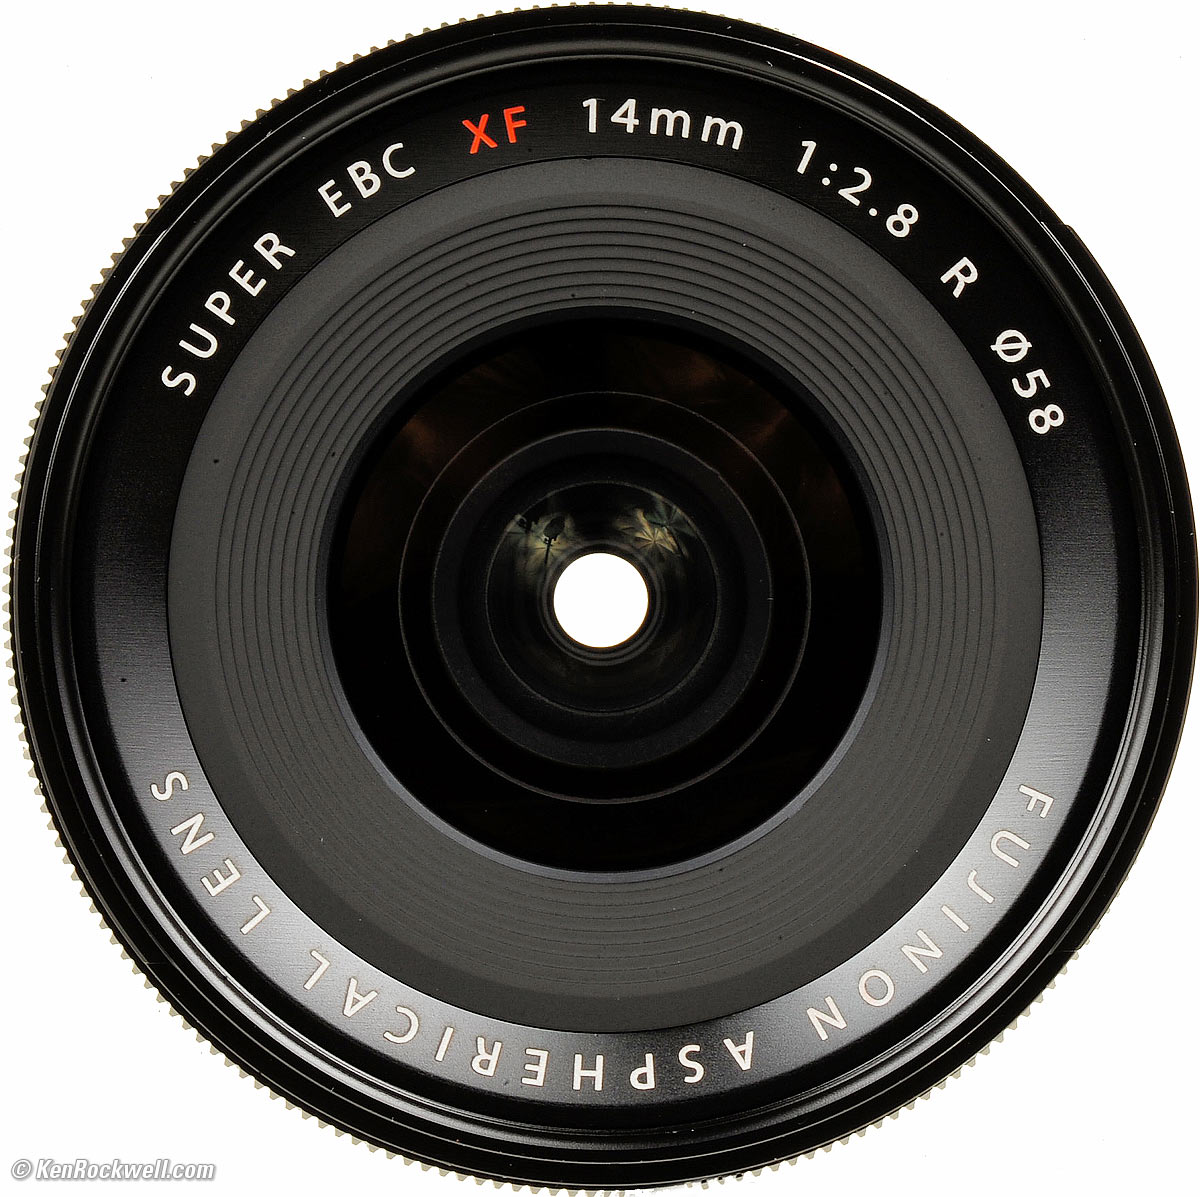 Fuji XF 14mm f/2.8 Review